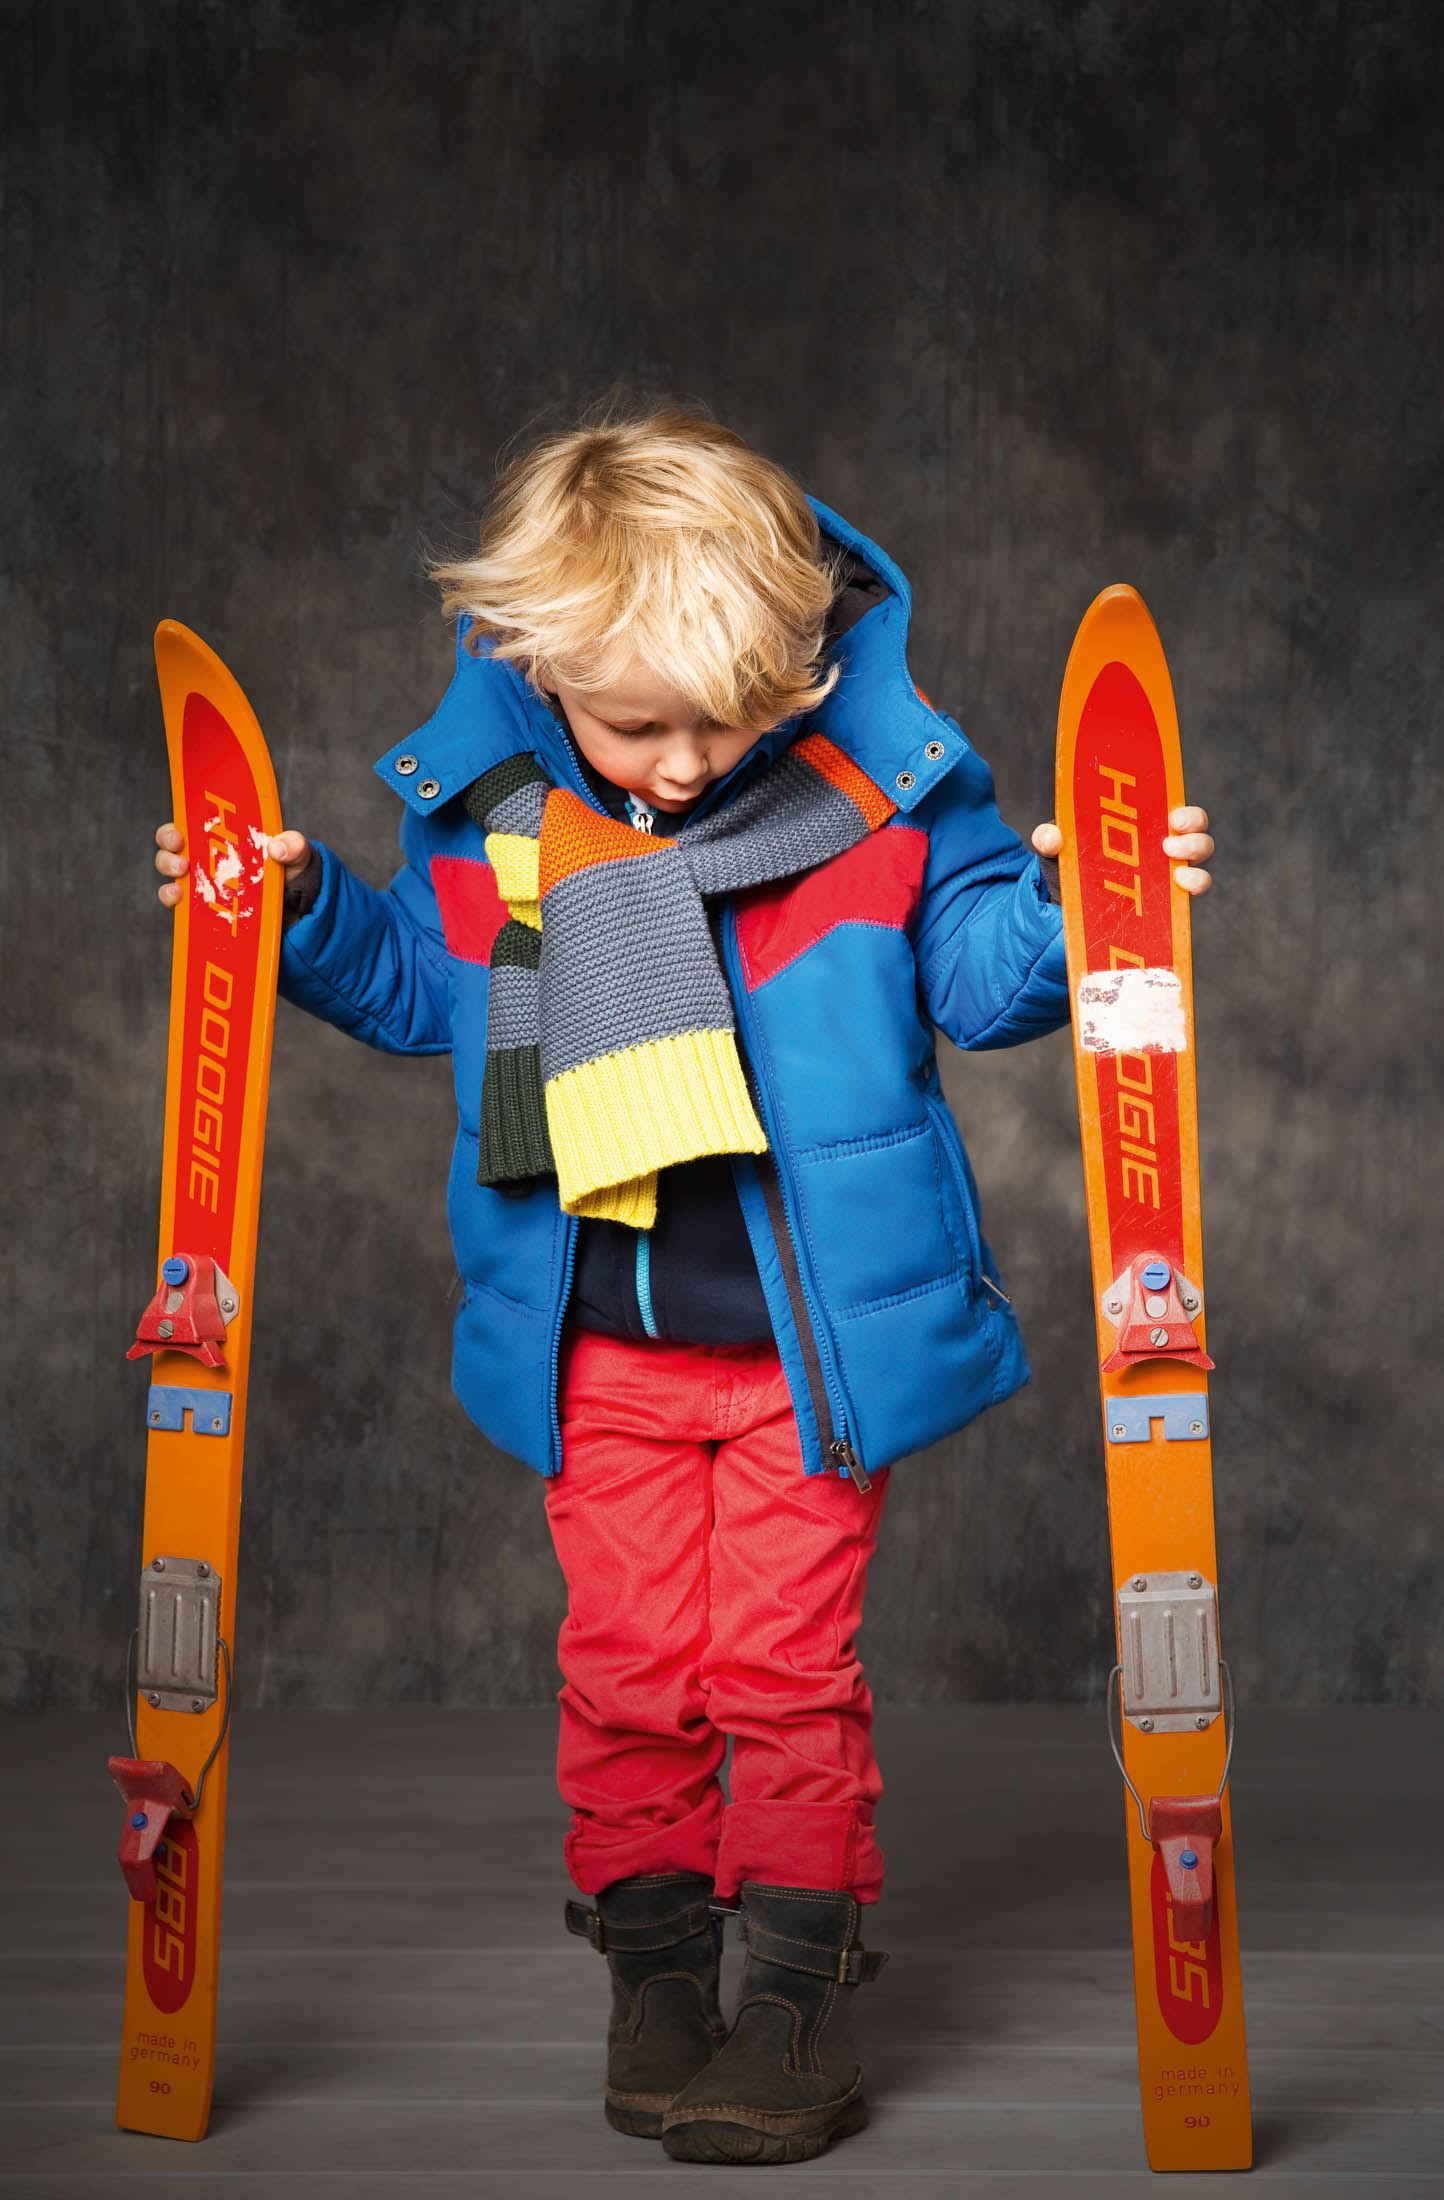 Ein kleines Kind in einer bunten Winterjacke und roten Hosen hält ein Paar orangefarbene Skier in der Hand und blickt mit leichtem Stirnrunzeln auf sie herab, vor einem strukturierten grauen Hintergrund. © Fotografie Tomas Rodriguez